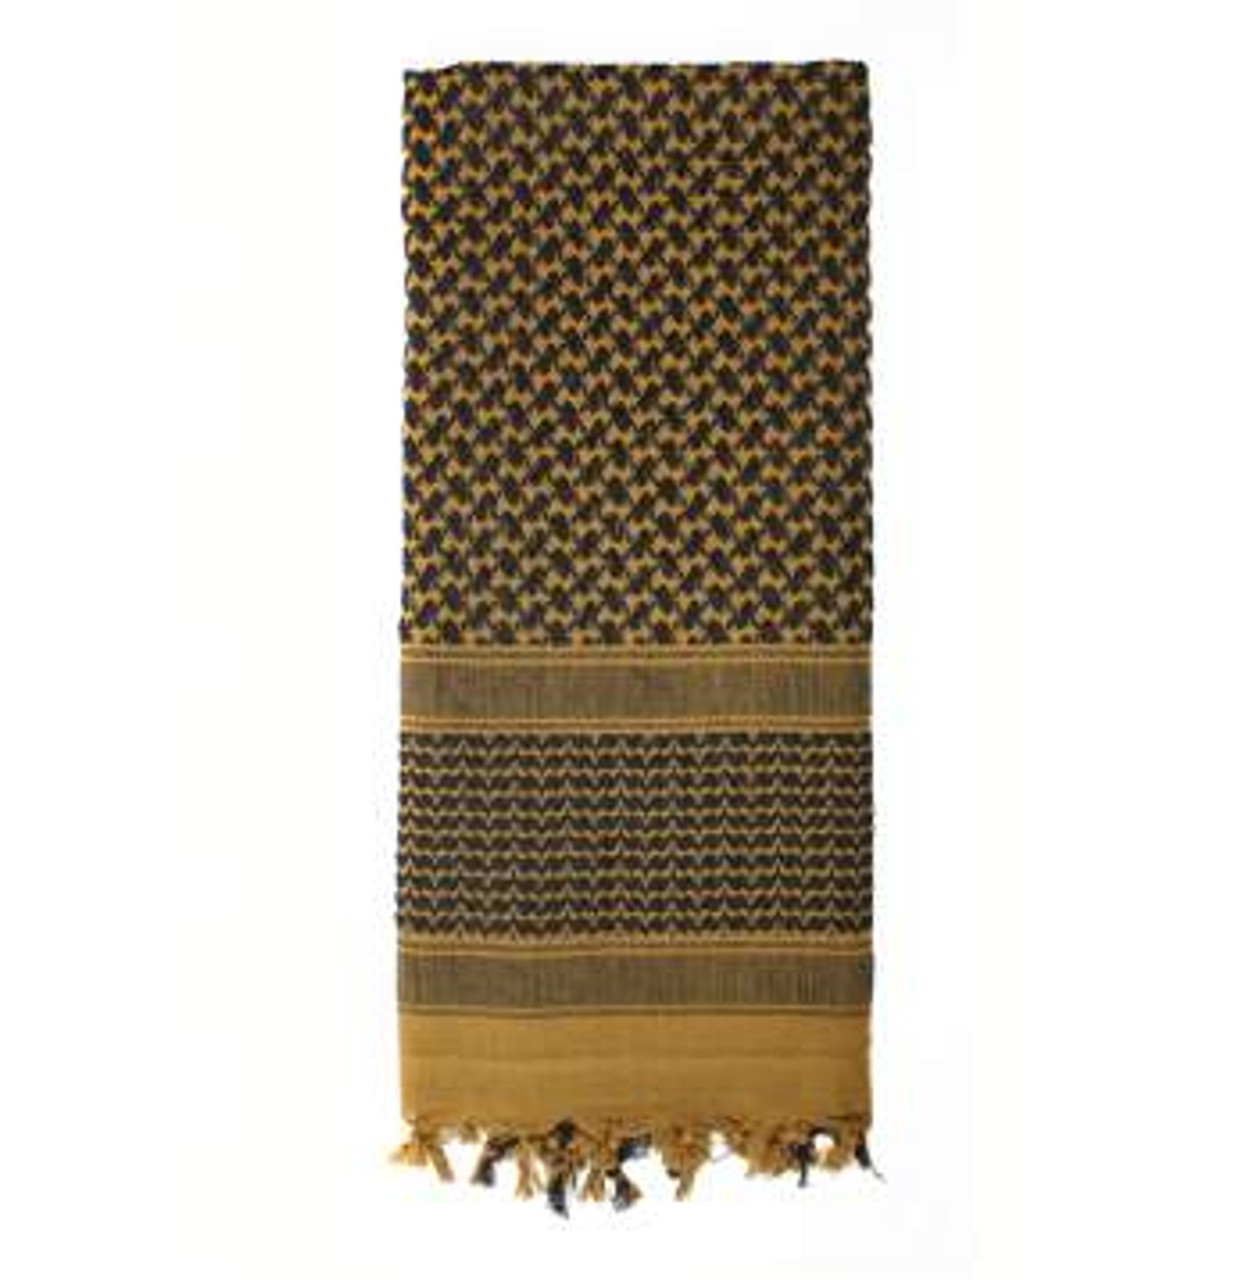 Genuine Keffiyeh - Original Scarves